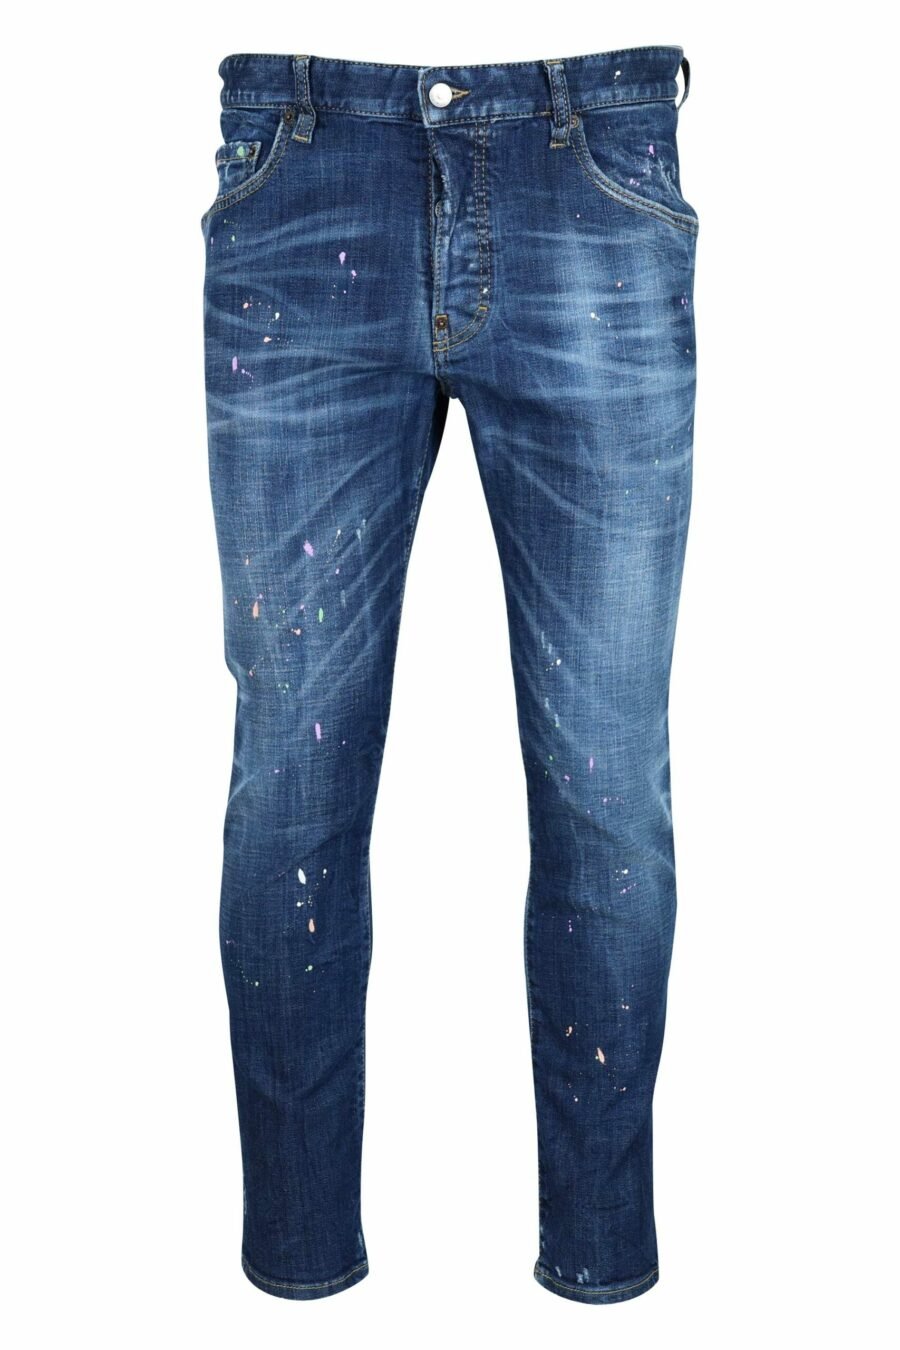 Pantalón vaquero azul oscuro "skater jean" con pintura blanca - 8054148527457 scaled